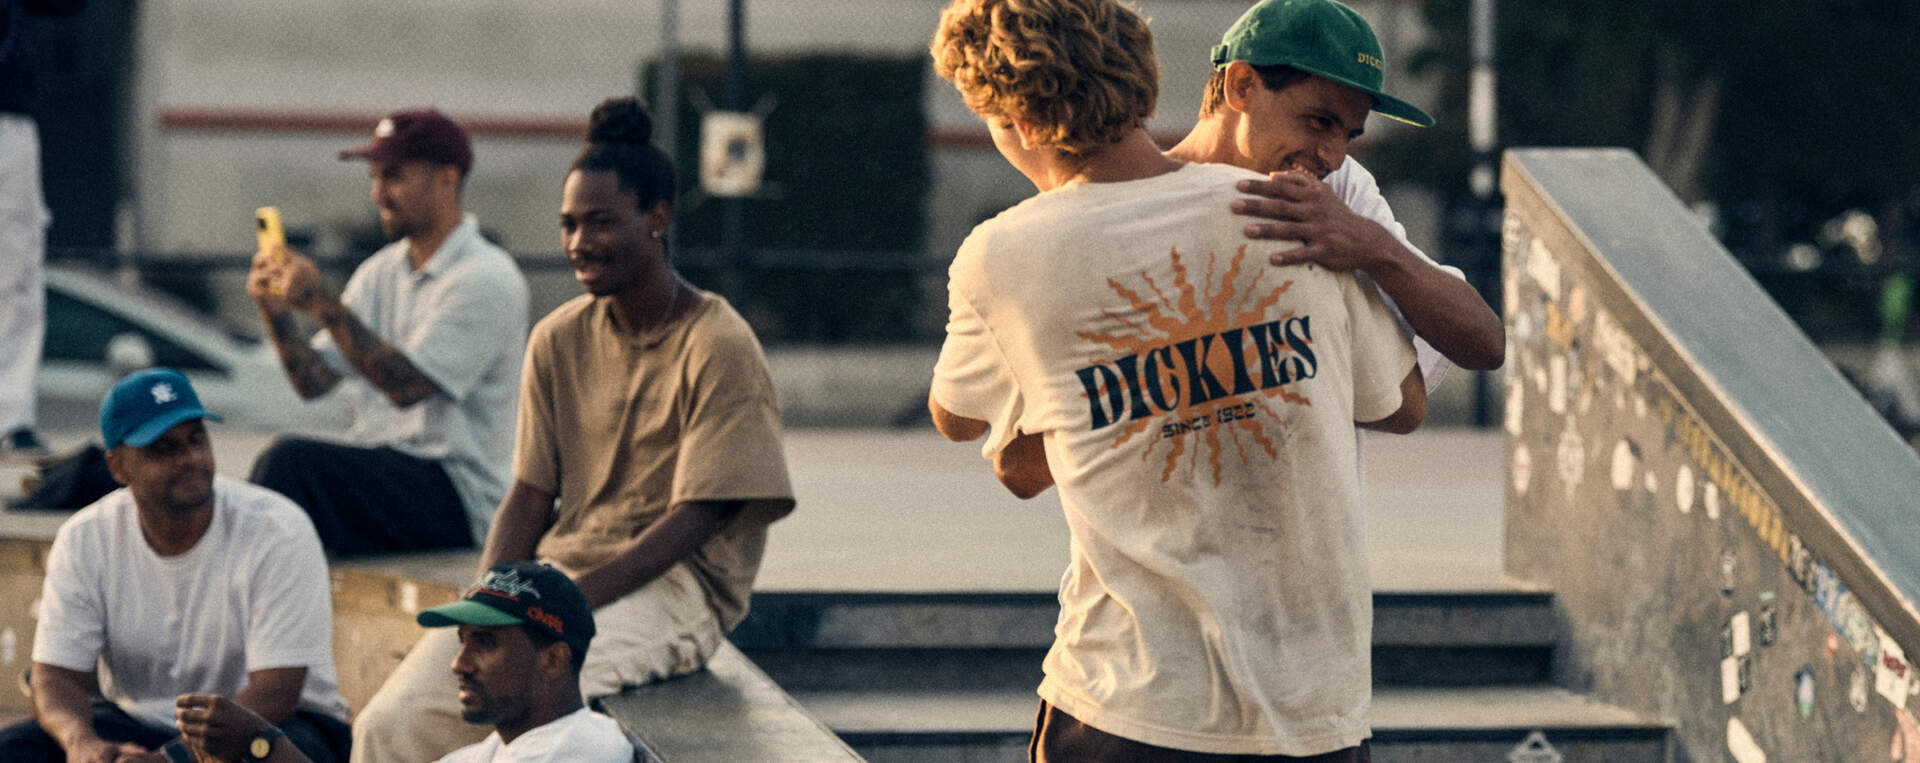 Workers hugging in skate park